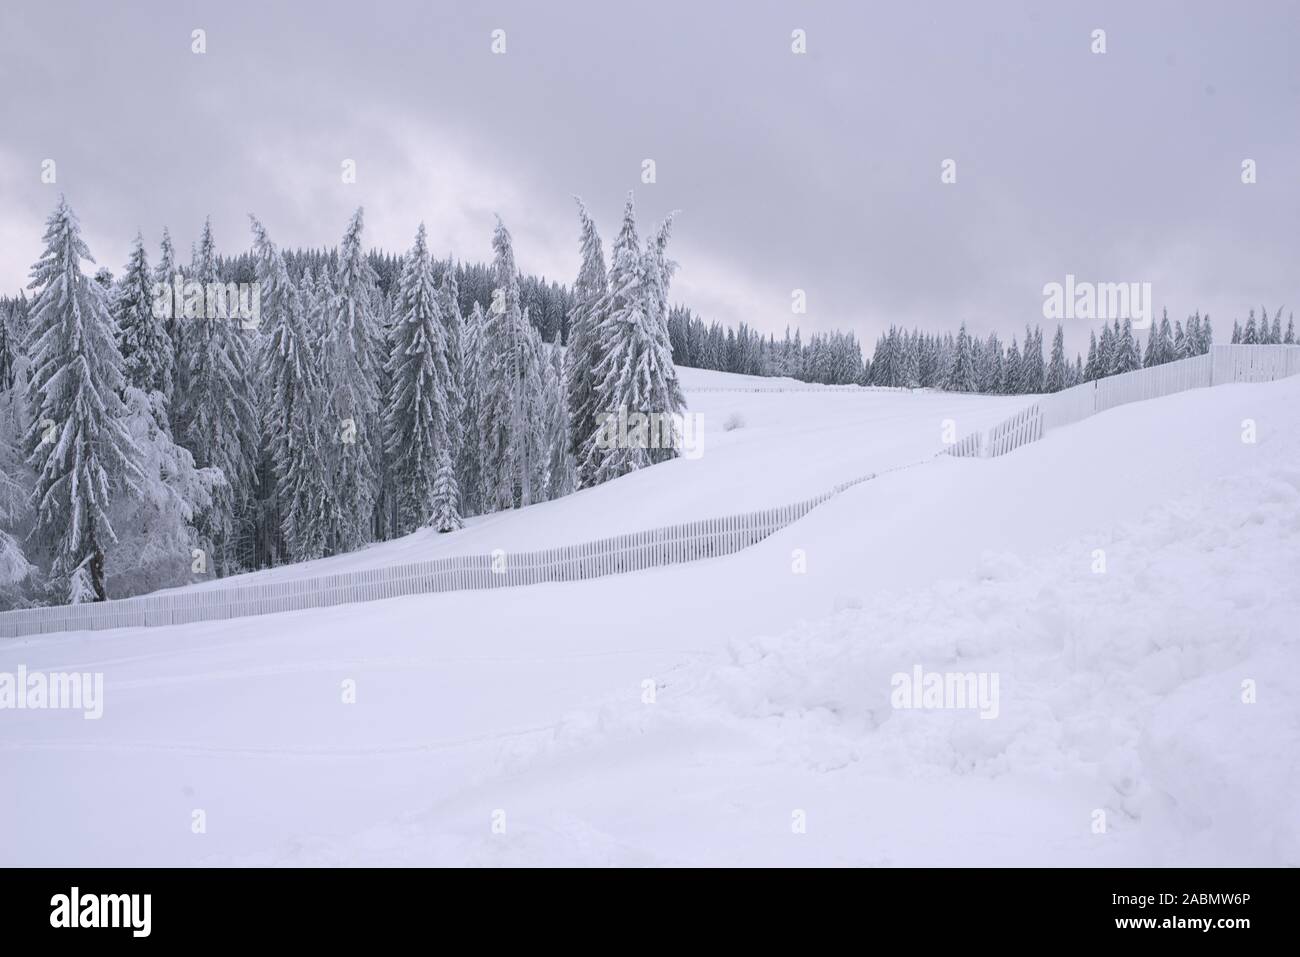 Schöne Aussicht auf die Landschaft im Winter. Frostige Kiefern, Schnee, gefrorener Zaun. Kalte, bewölkte Winterzeit. Farbenfroher weihnachtsuntergang Stockfoto